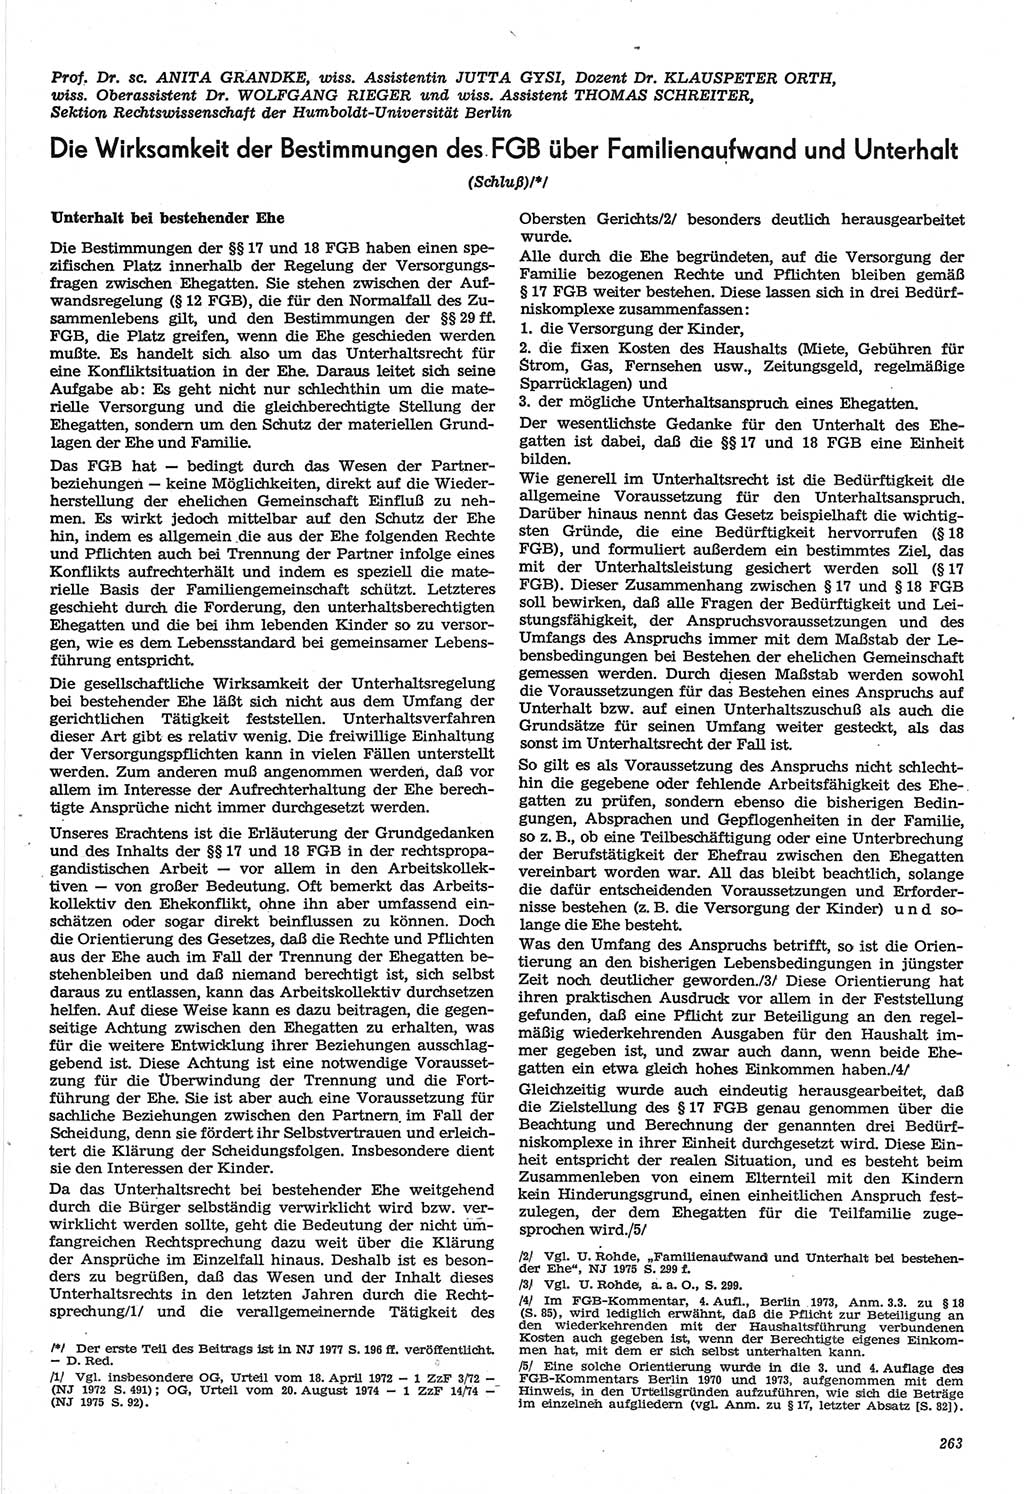 Neue Justiz (NJ), Zeitschrift für Recht und Rechtswissenschaft-Zeitschrift, sozialistisches Recht und Gesetzlichkeit, 31. Jahrgang 1977, Seite 263 (NJ DDR 1977, S. 263)